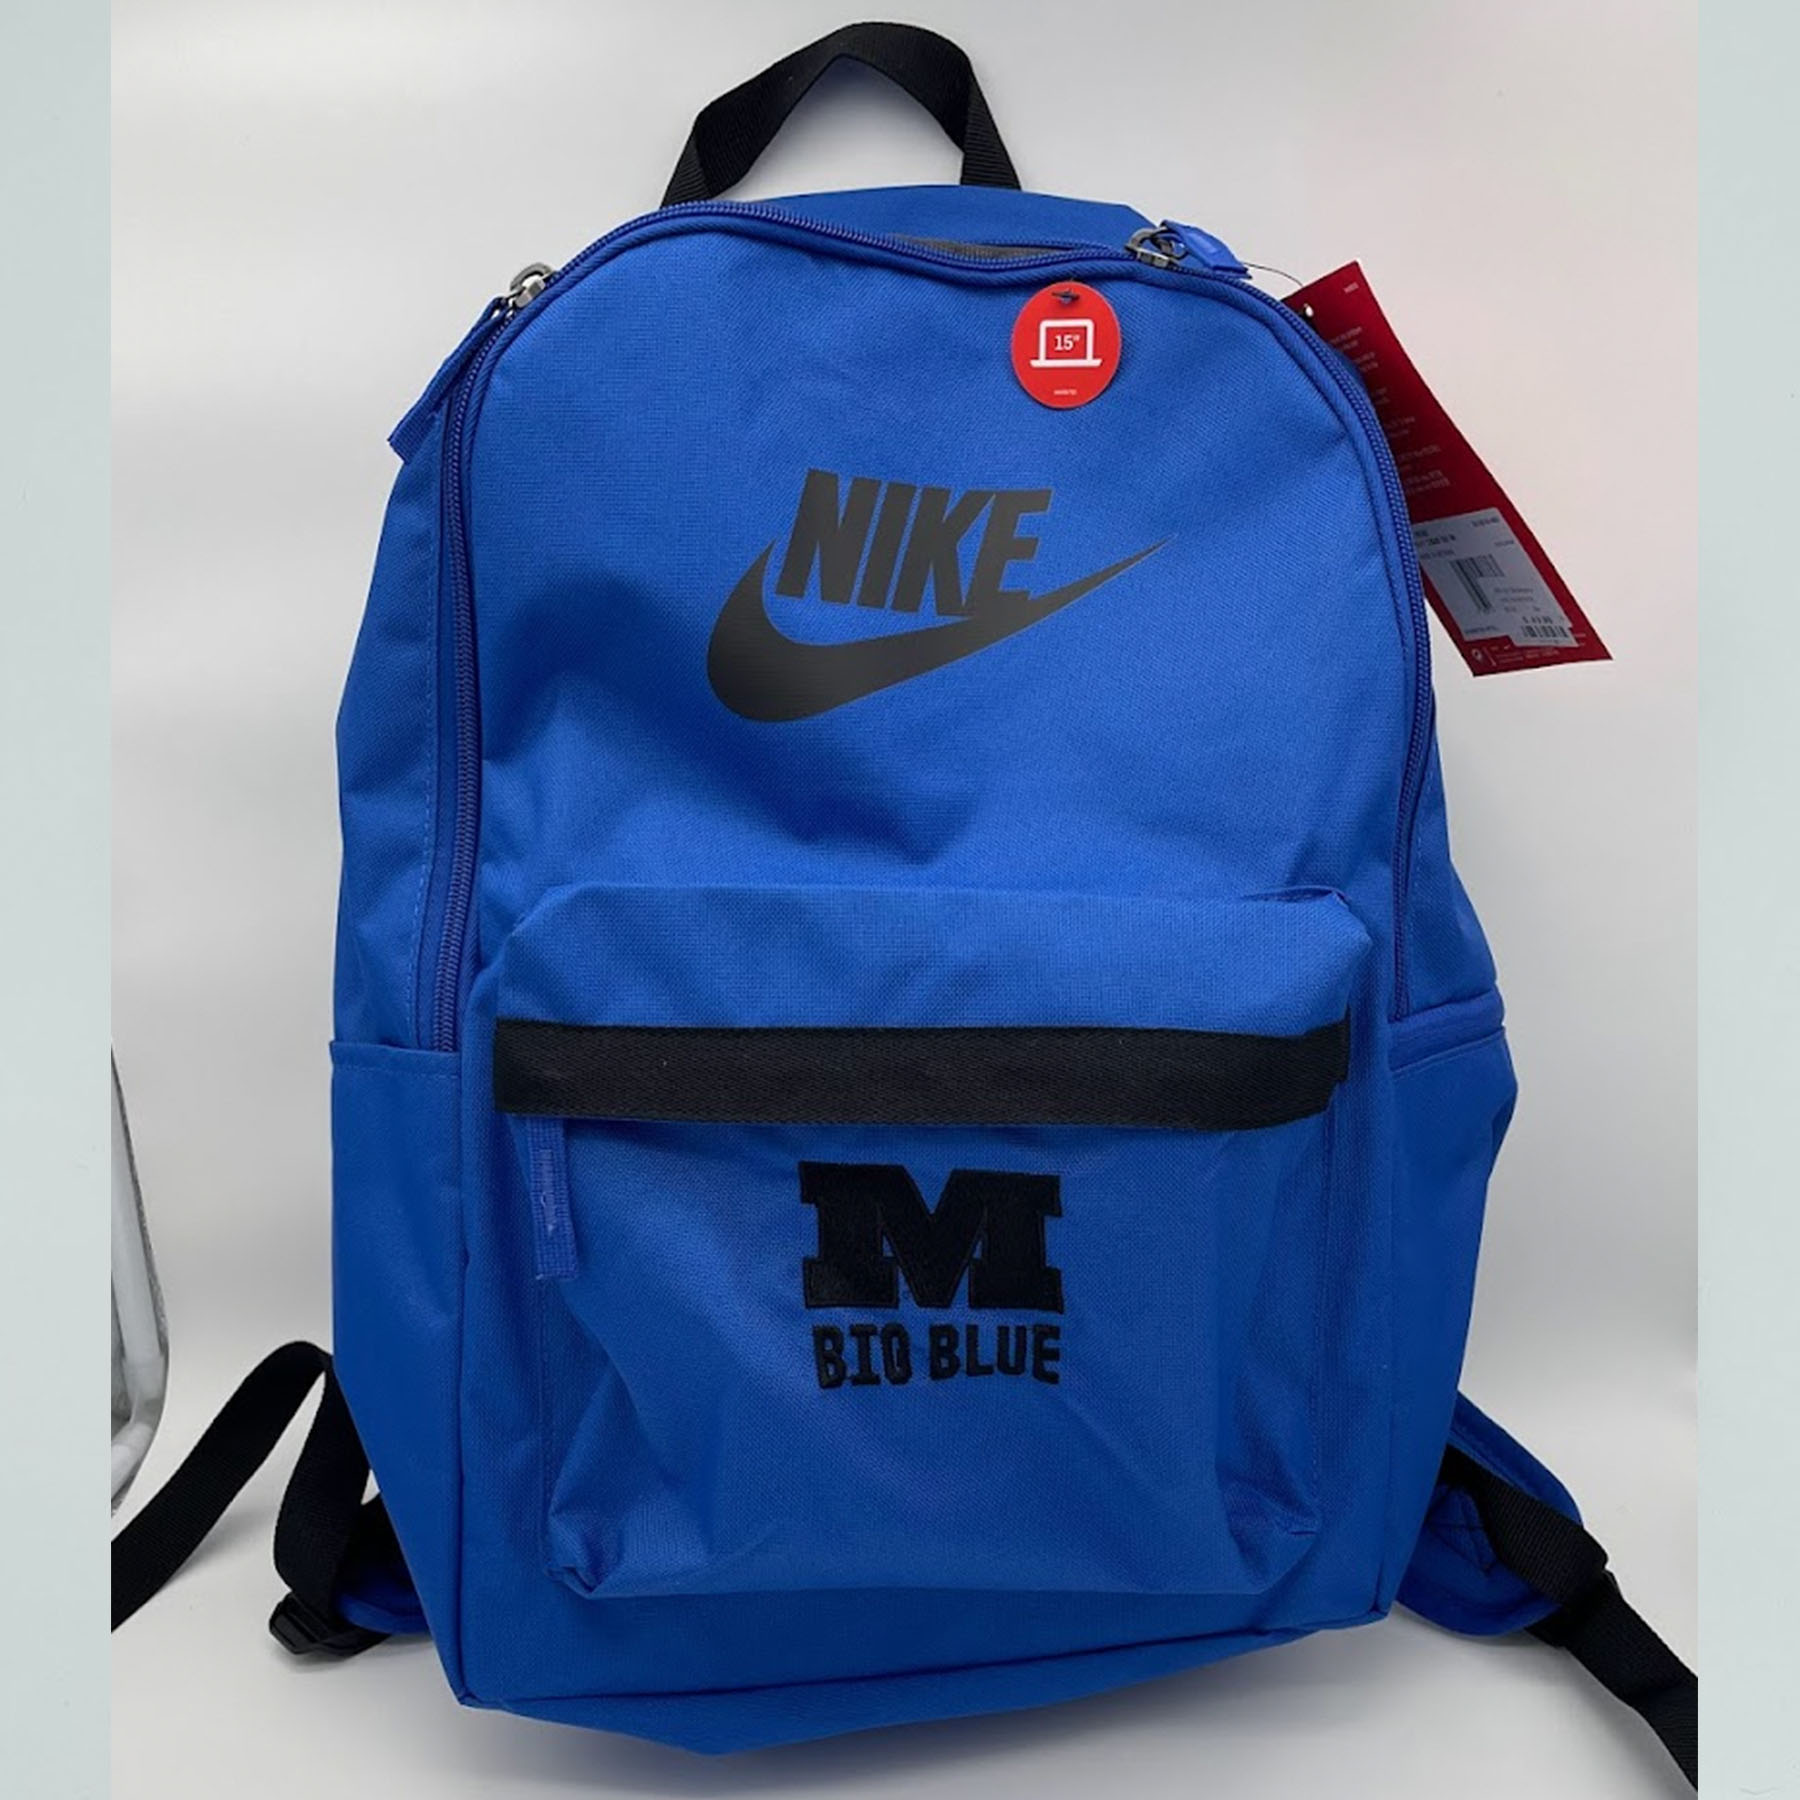 Millikin Nike Backpack